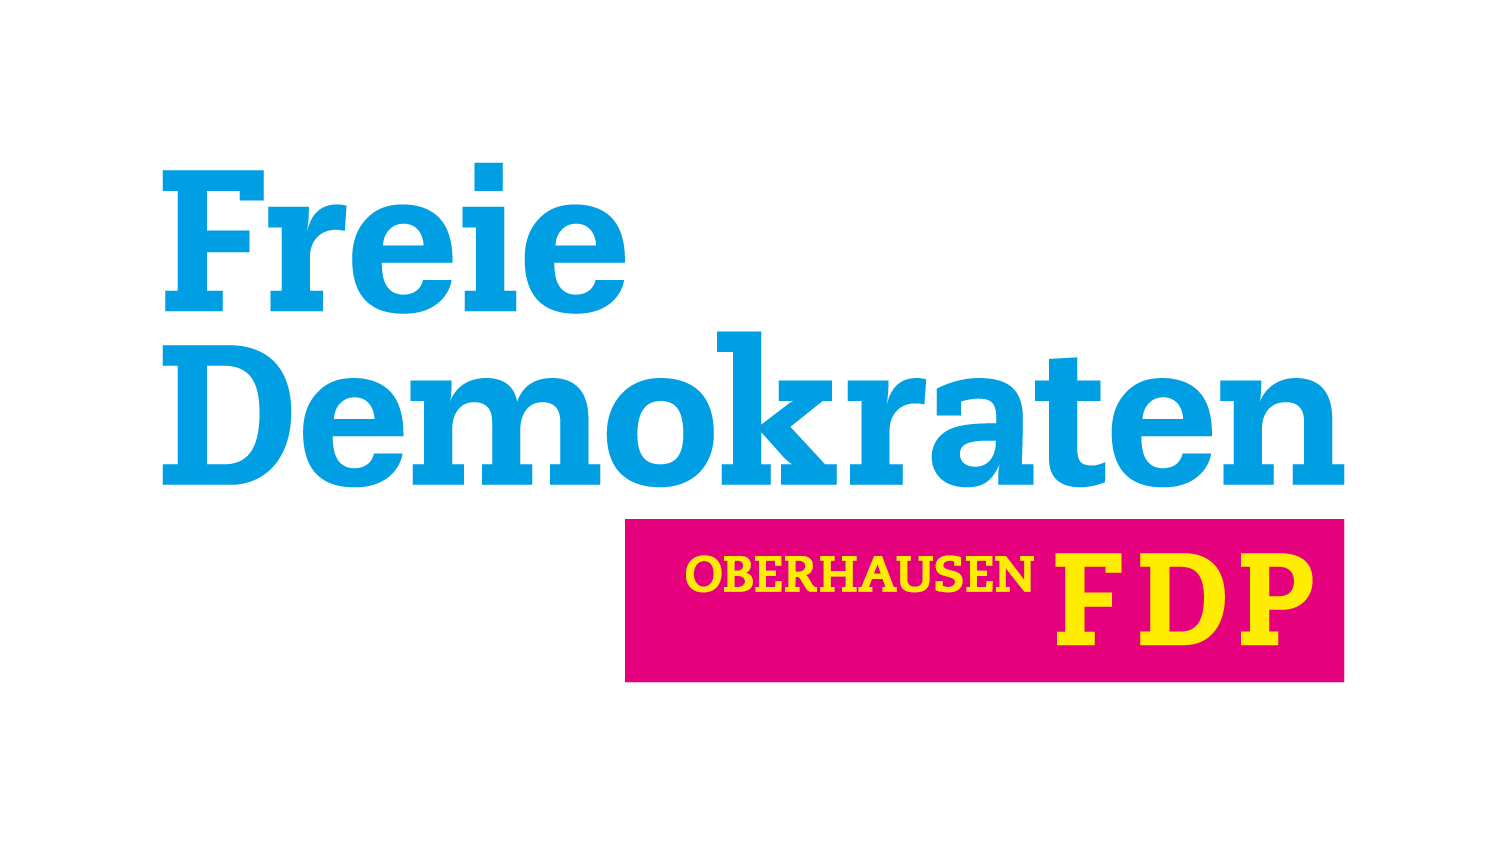 FDP Oberhausen